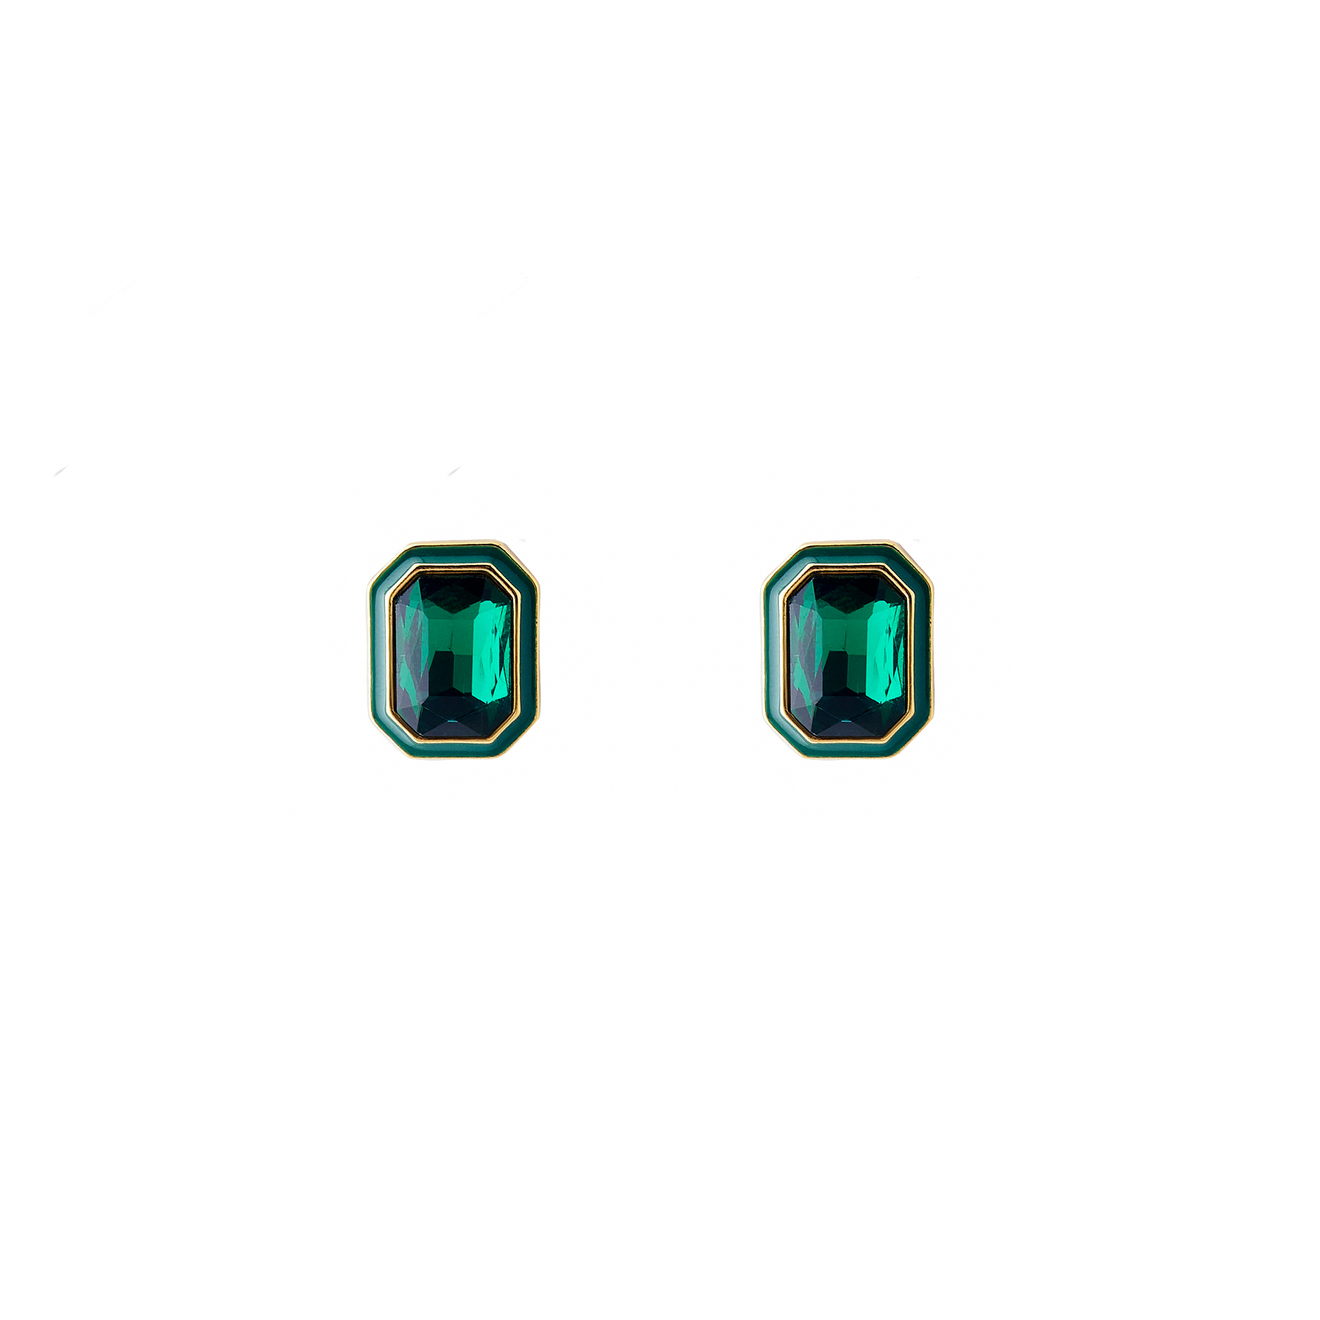 Herald Percy Крупные золотистые серьги с зелеными кристаллами и зеленой эмалью herald percy золотистый браслет с зелеными кристаллами